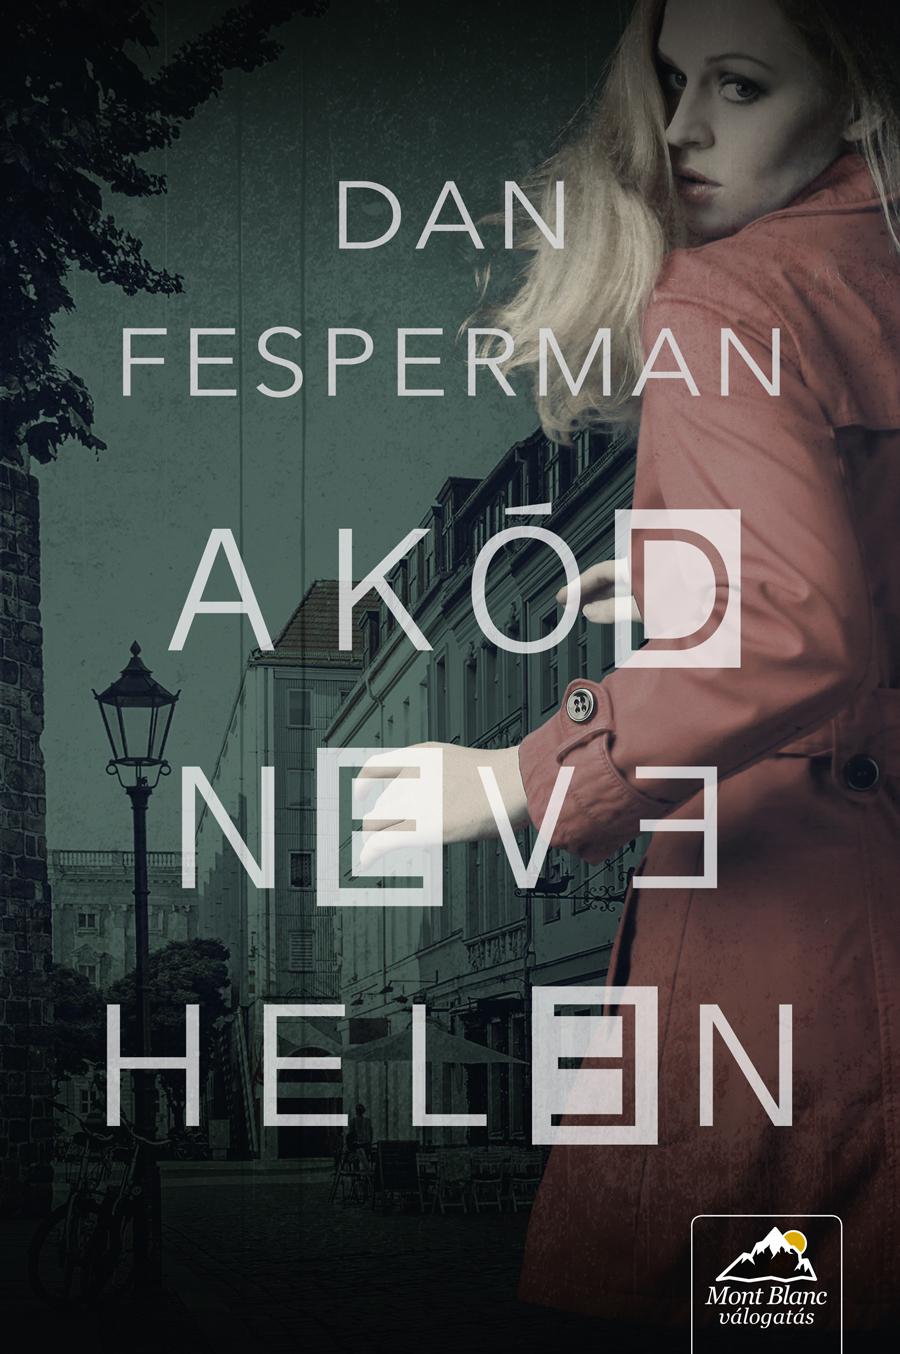 Dan Fesperman - A Kd Neve Helen